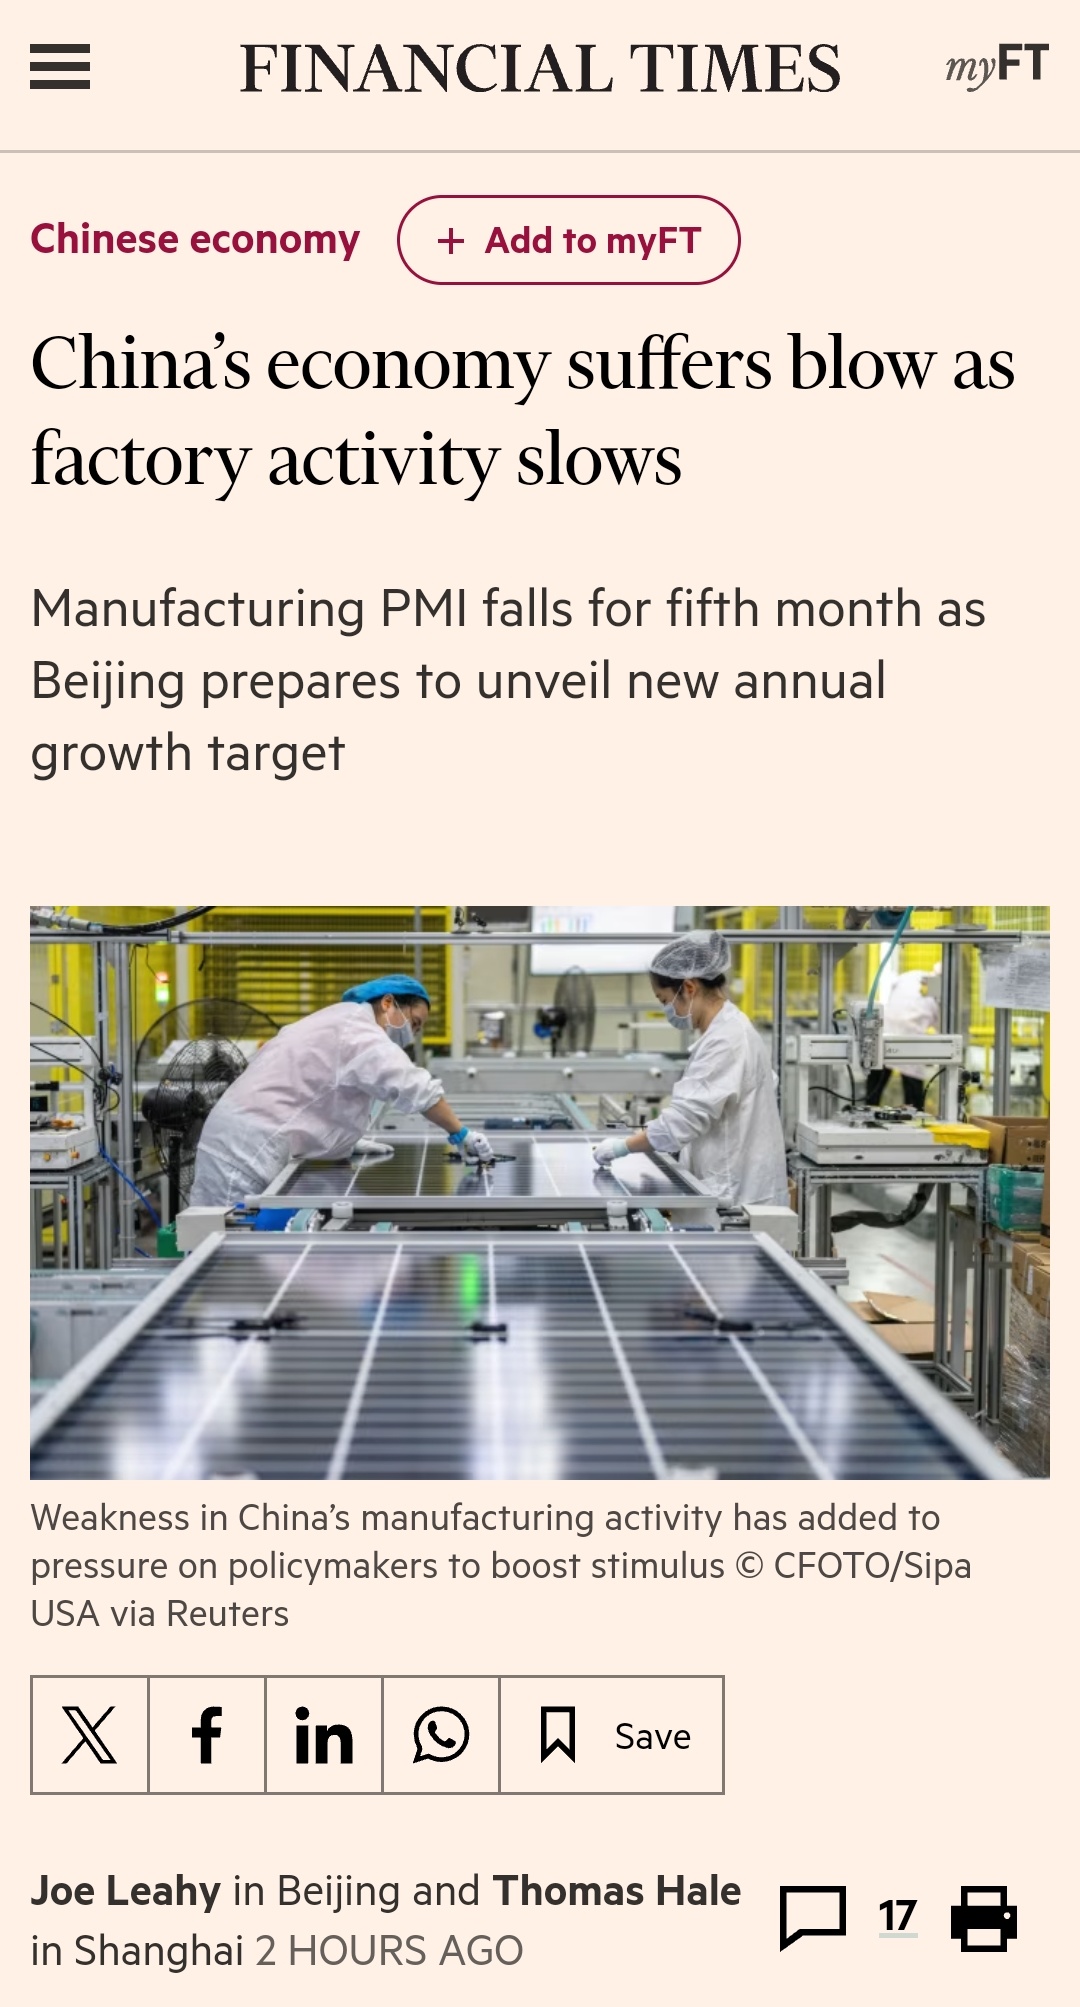 由於工廠活動放緩，中國經濟遭受打擊